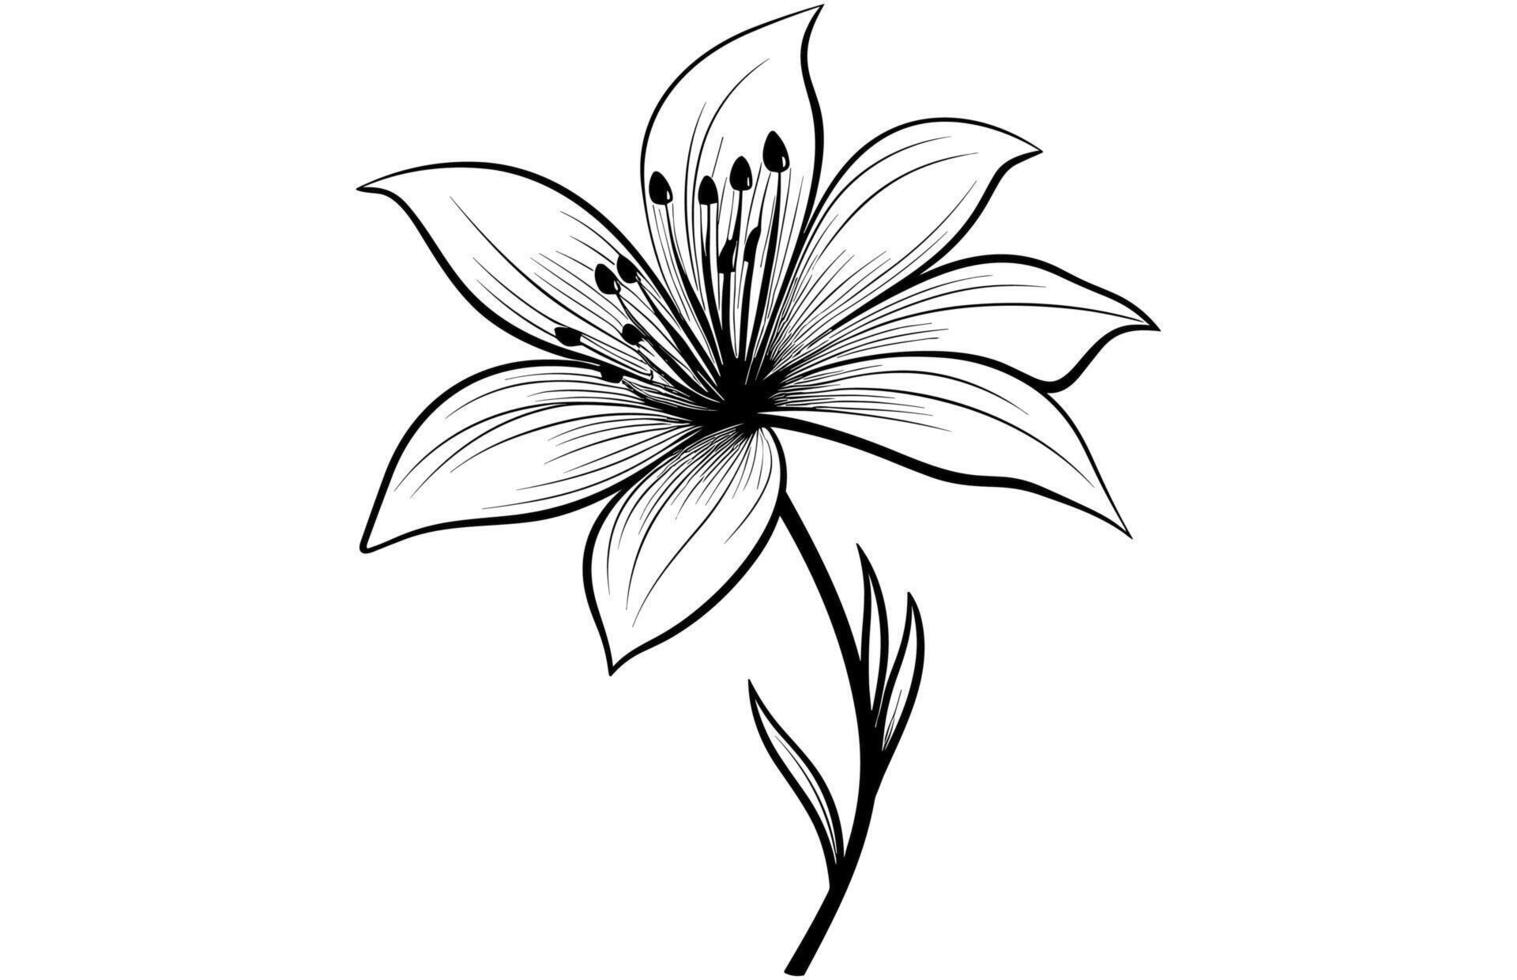 Line art vanilla flower illustration, Vanilla flower sketch ink vector illustration.